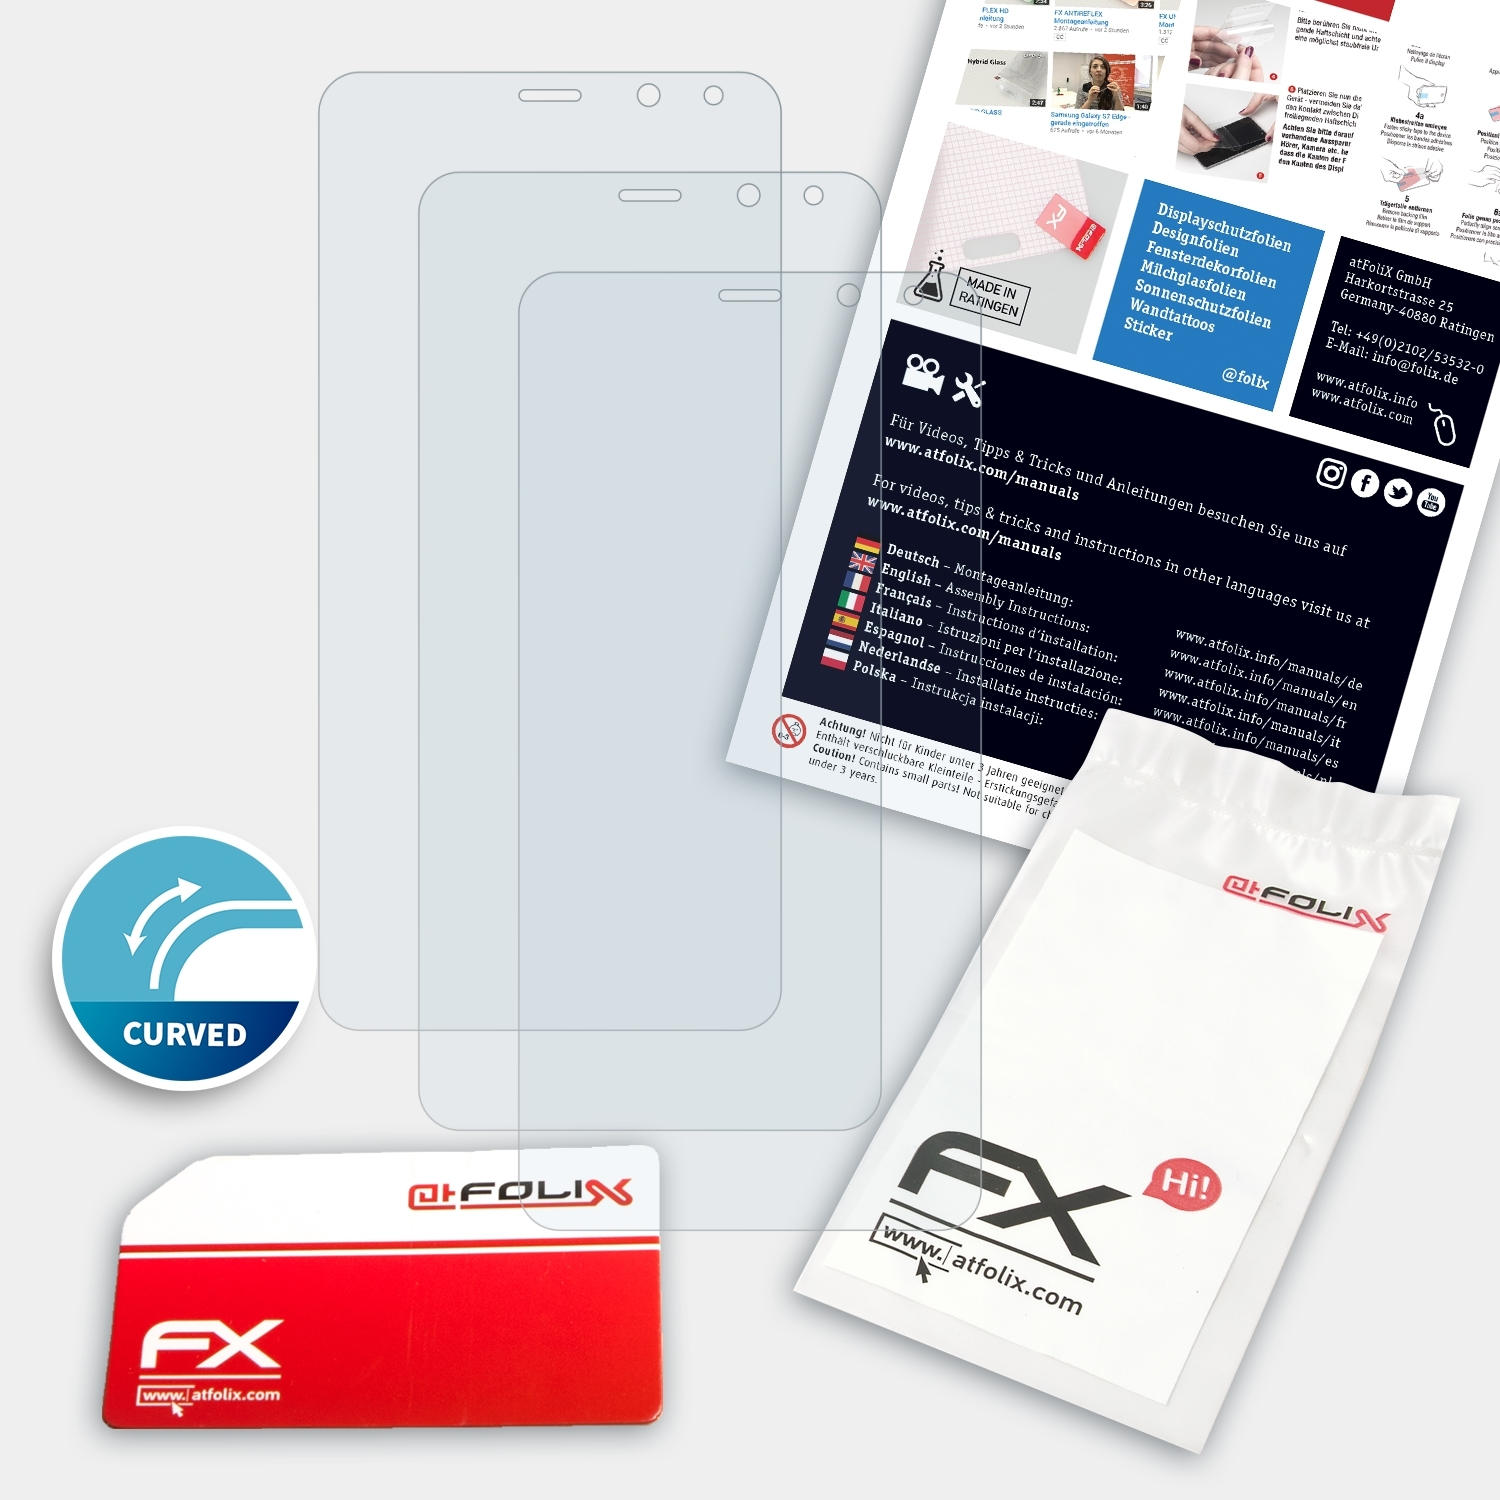 ATFOLIX 3x FX-ActiFleX Displayschutz(für M5 Plus) Gooweel